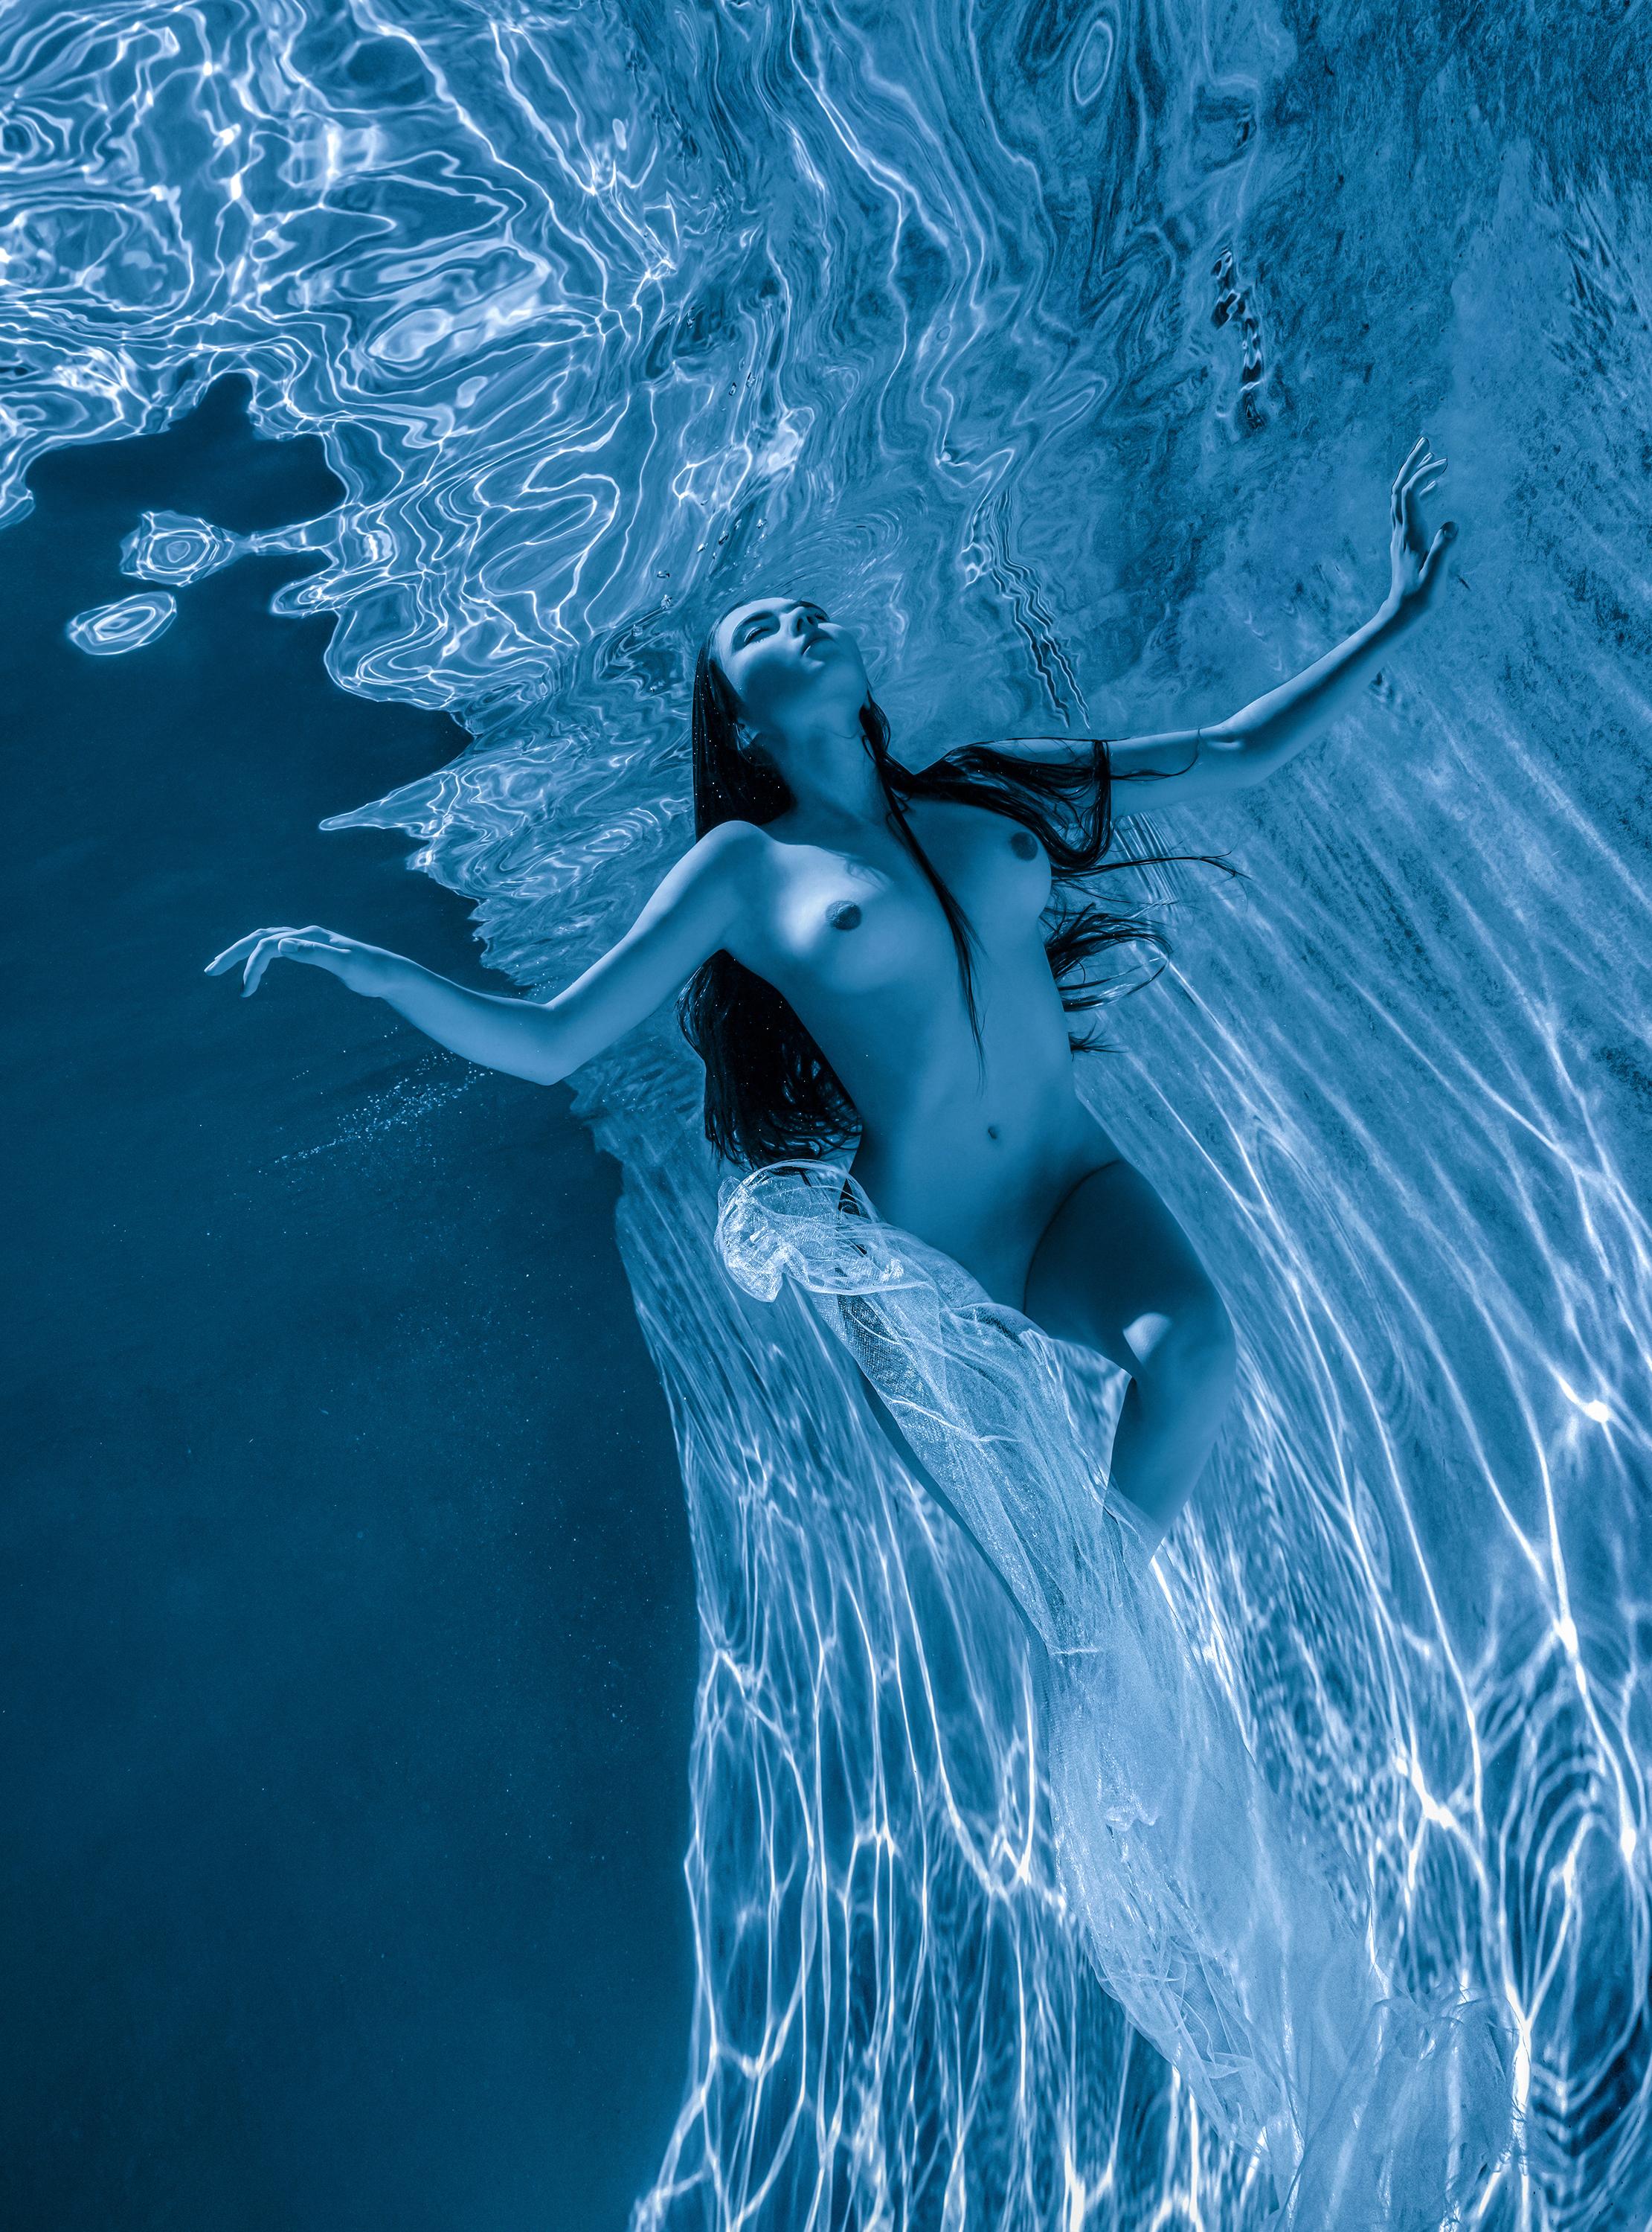 Freediver - photographie de nu sous l'eau - impression pigmentaire d'archives 24x18".